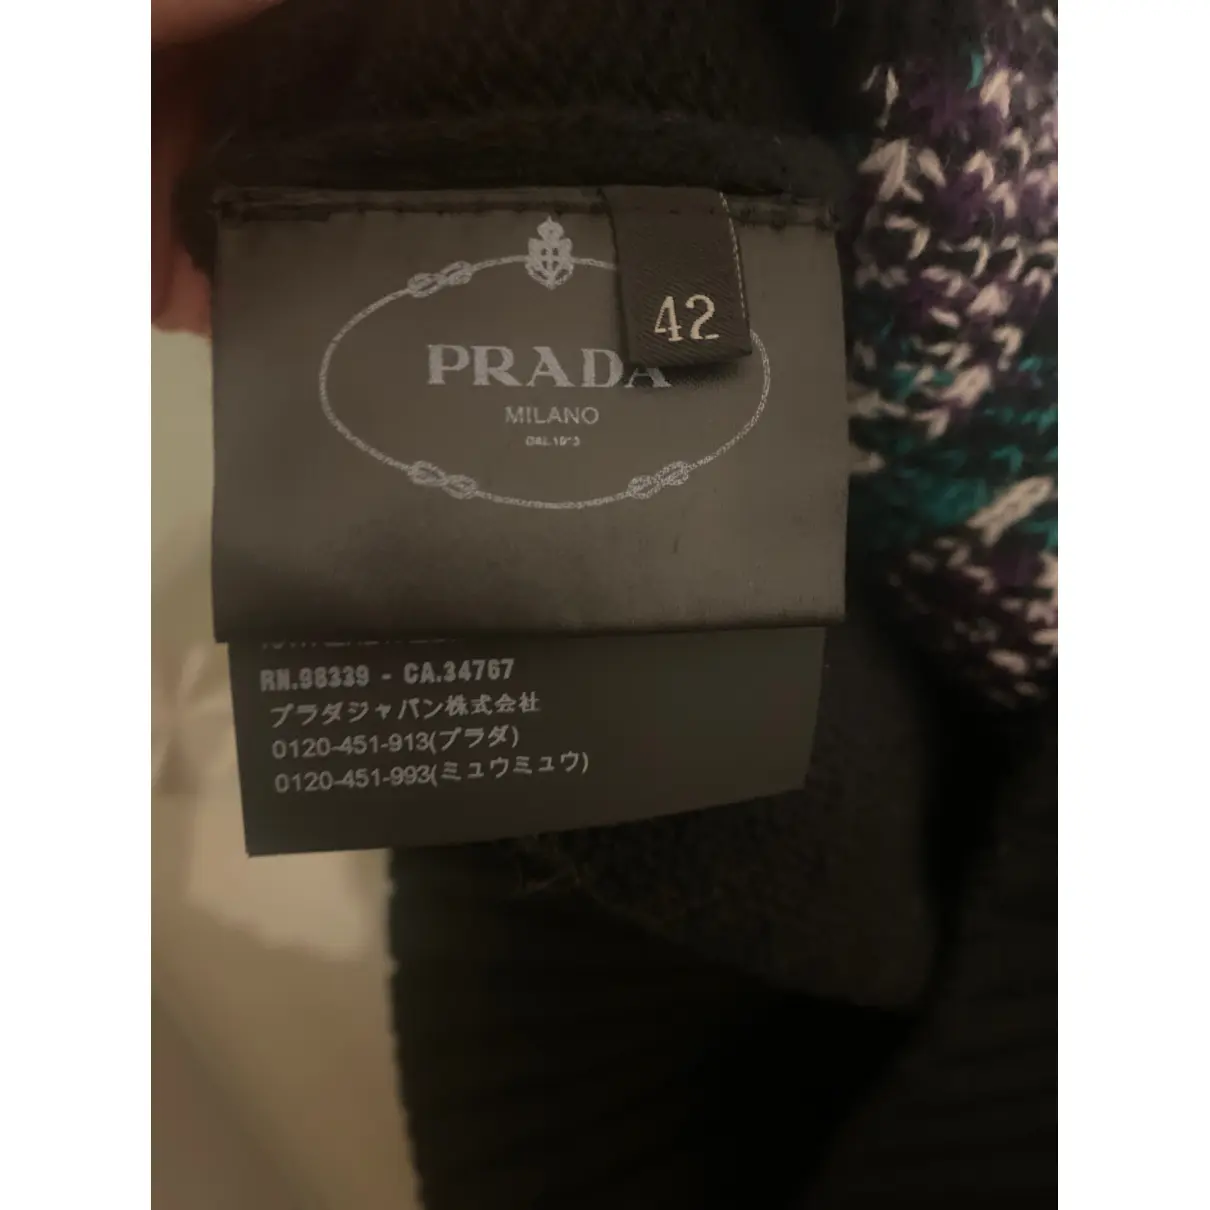 Luxury Prada Knitwear Women